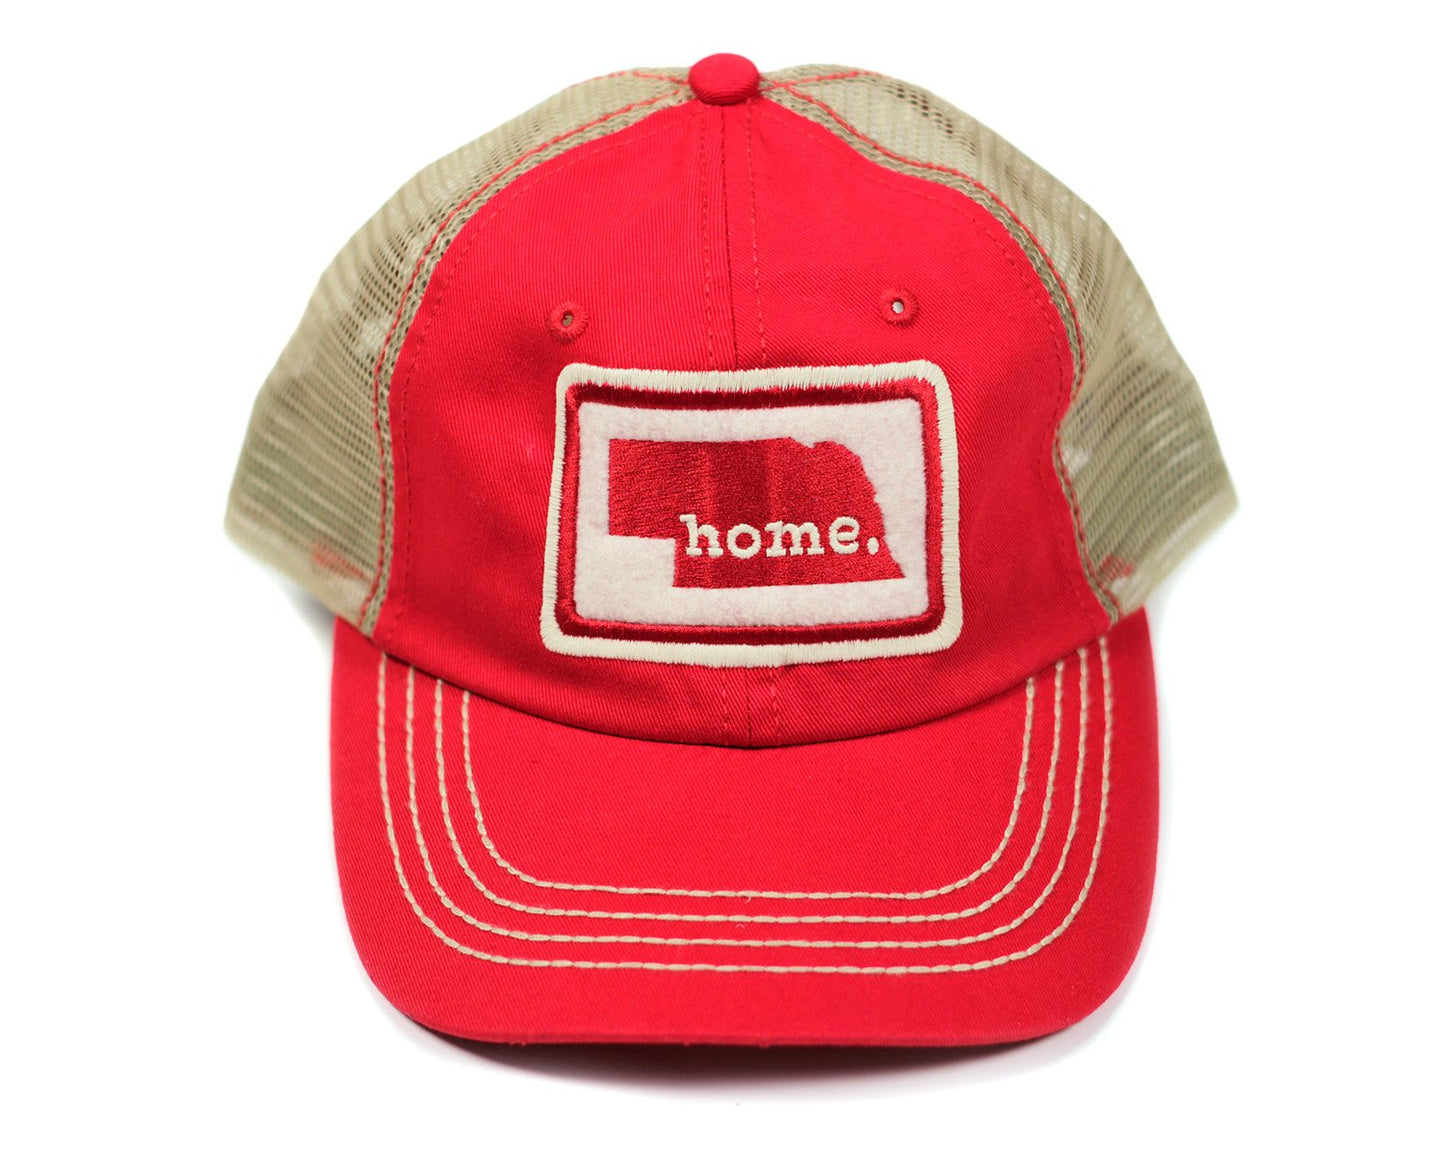 home. Mesh Hat - North Dakota